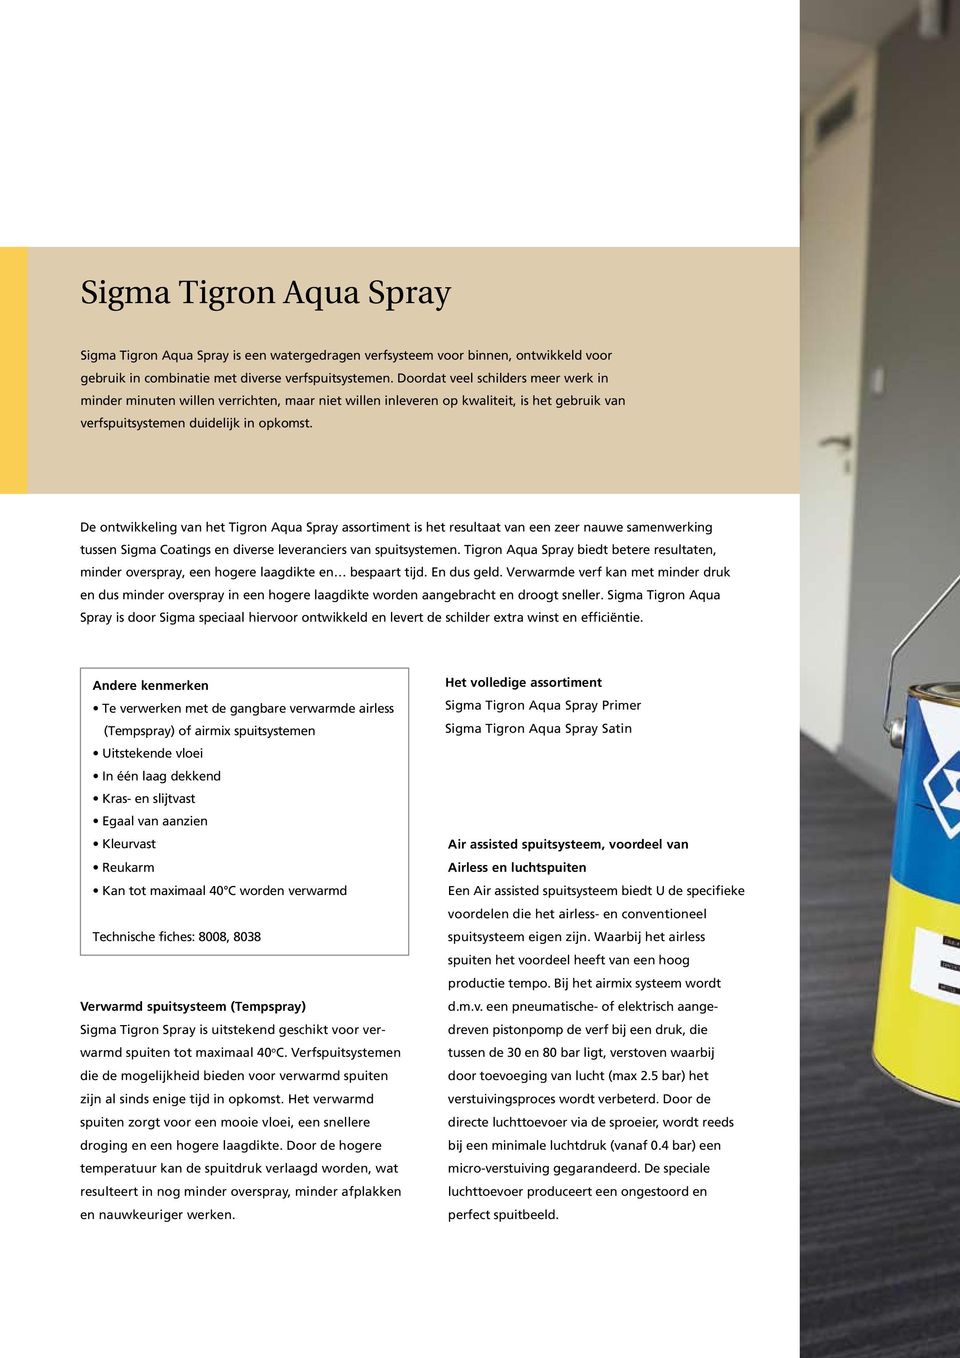 De ontwikkeling van het Tigron Aqua Spray assortiment is het resultaat van een zeer nauwe samenwerking tussen Sigma Coatings en diverse leveranciers van spuitsystemen.